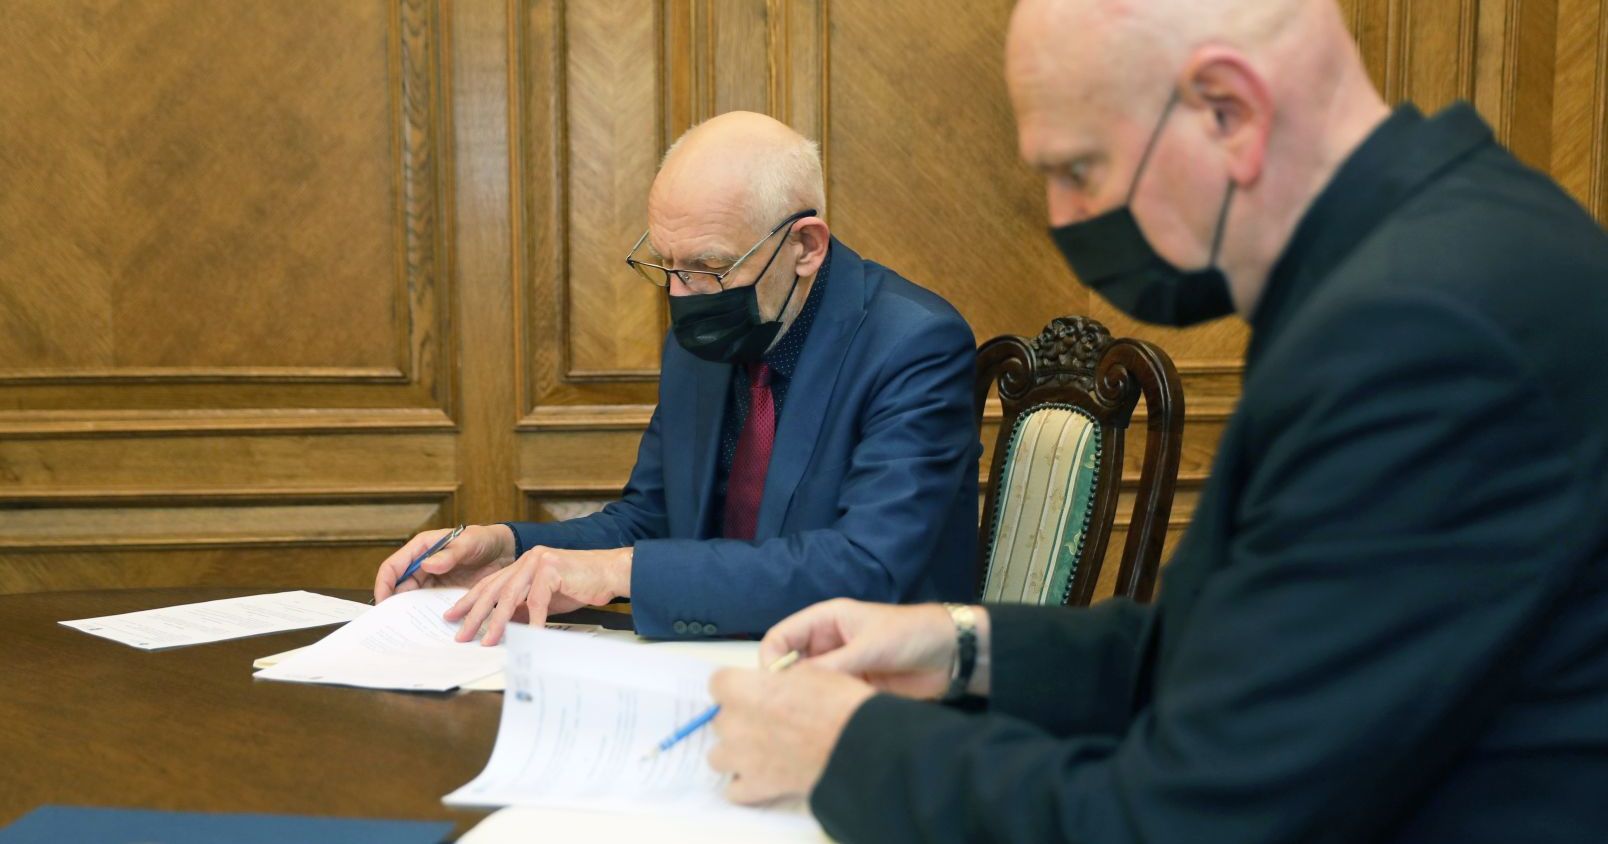 Porozumienie podpisali rektor UMK prof. dr hab. Andrzej Sokala i prezydent Torunia Michał Zaleski Dwóch mężczyzn siedzą przy stole i podpisują dokumenty, mężczyźni są w maseczkach